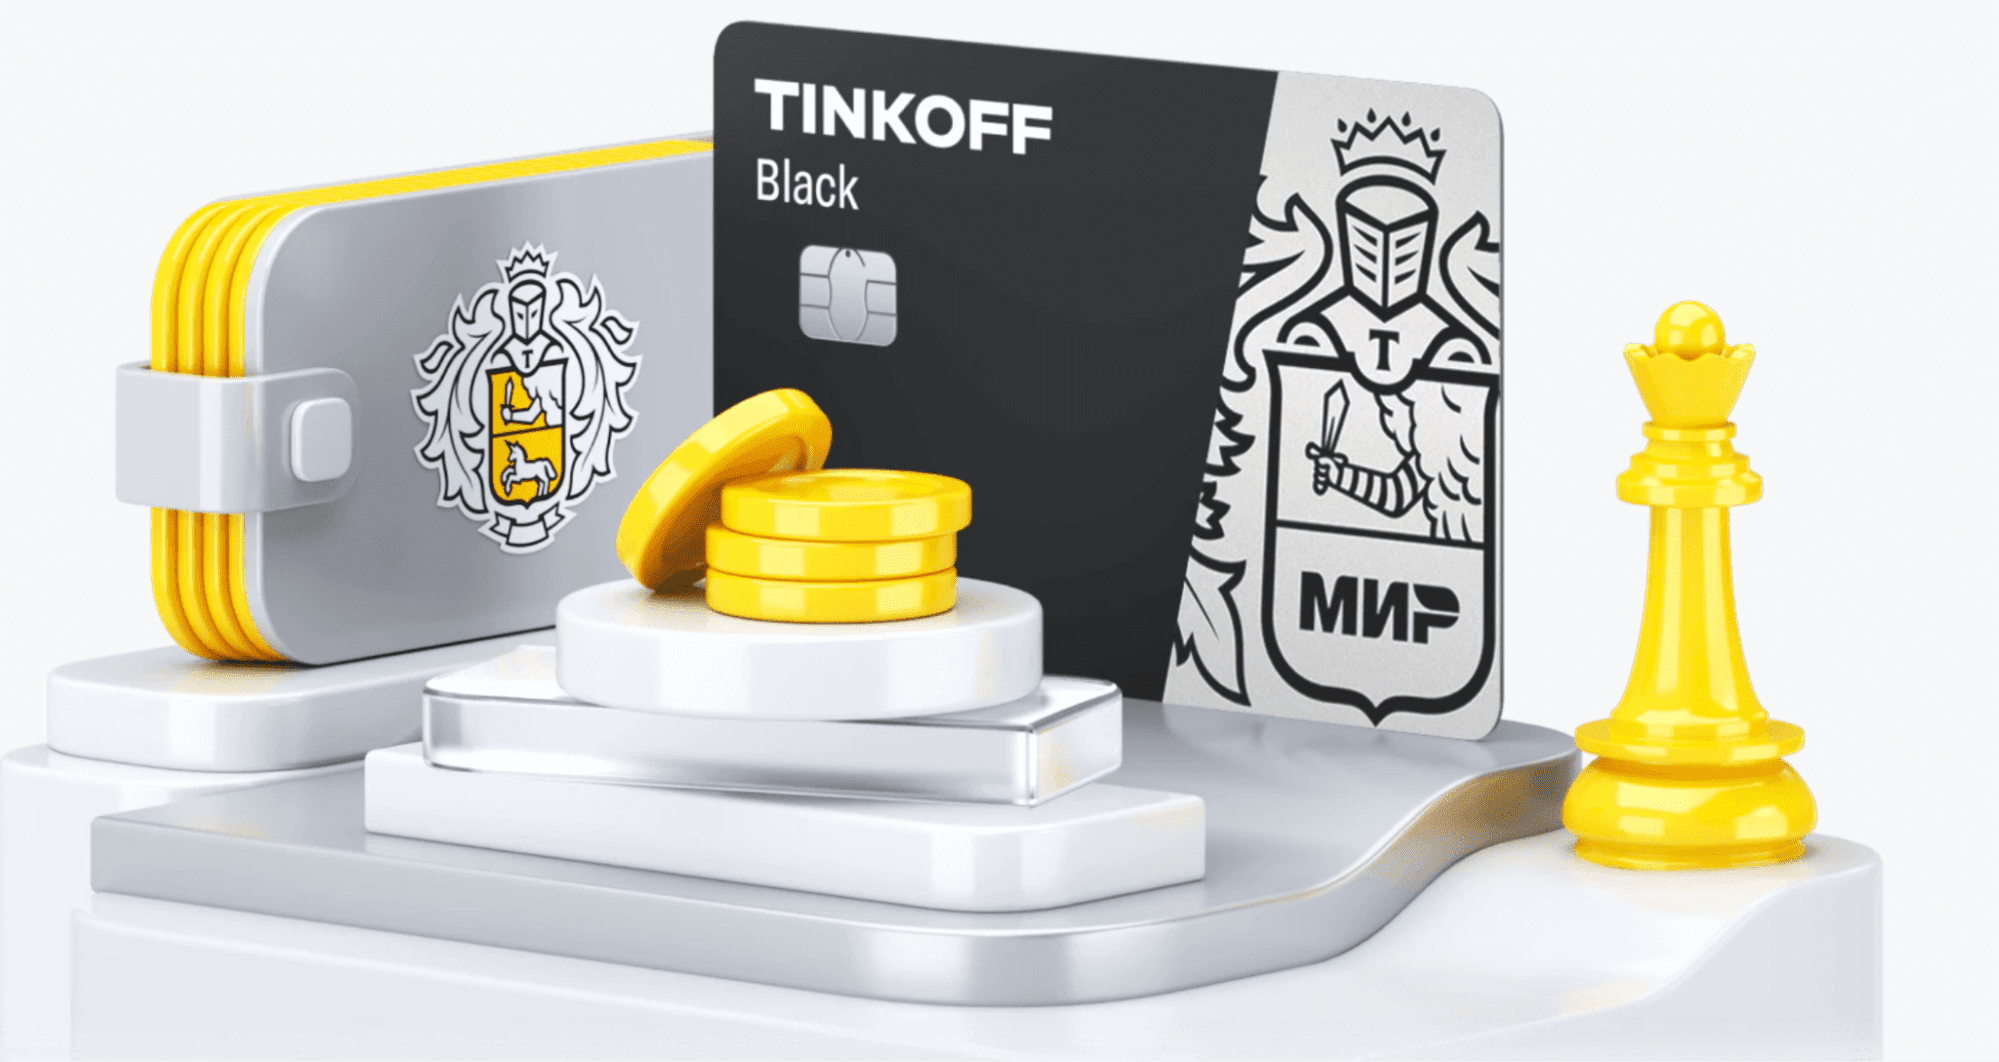 Пример оформления сайта “Tinkoff” в желто-черных тонах.